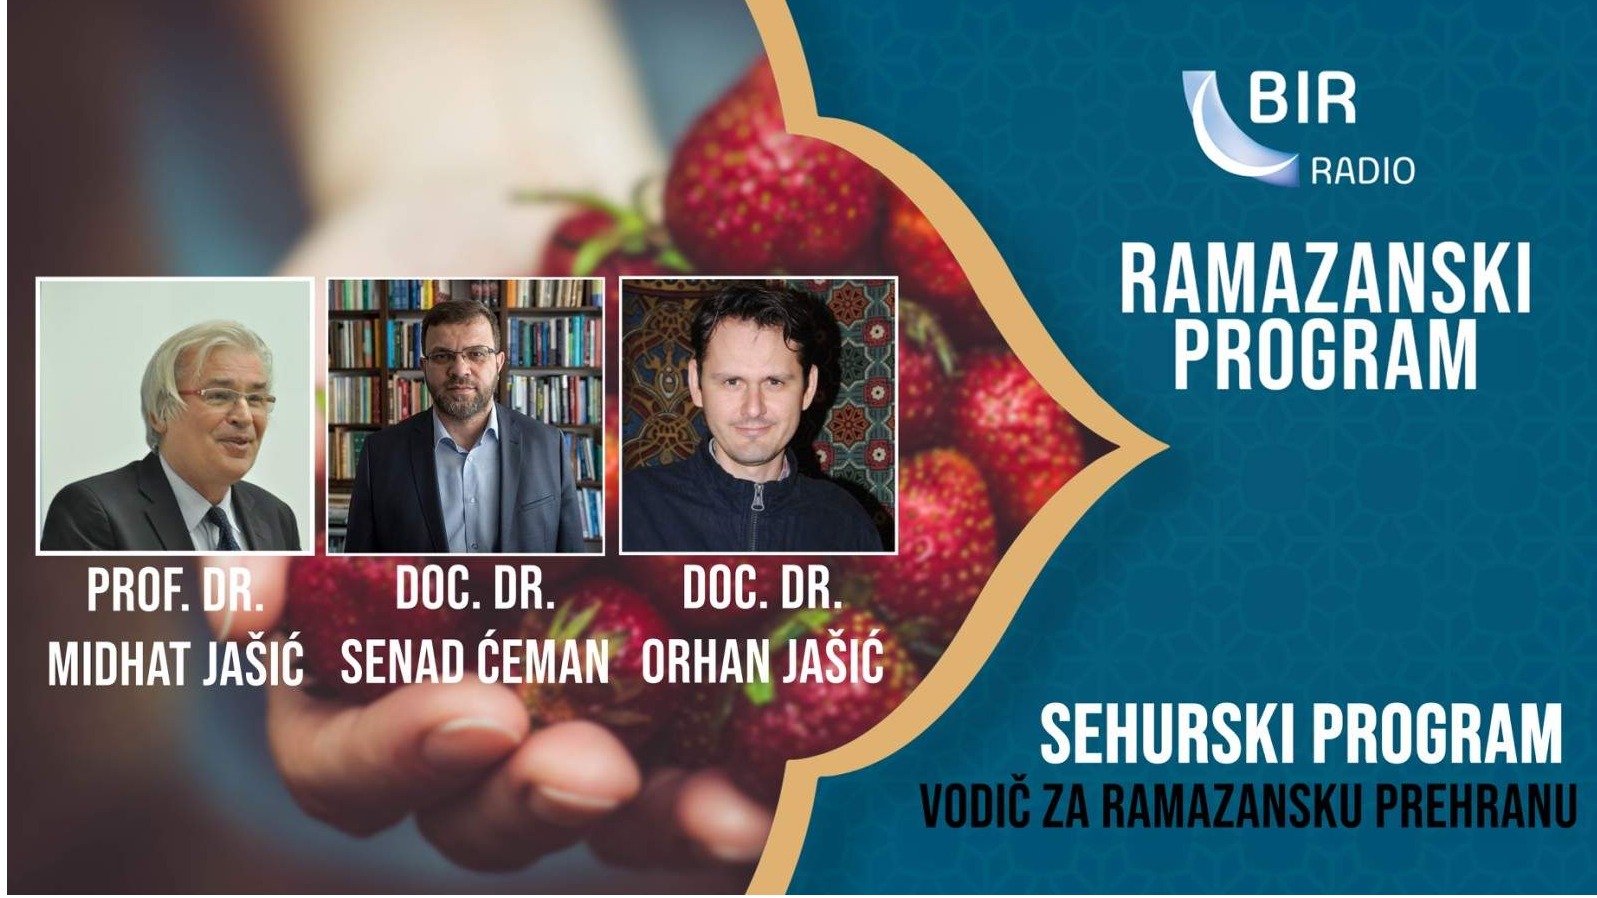 Sehurski program Radija BIR: Vodič za ramazansku prehranu